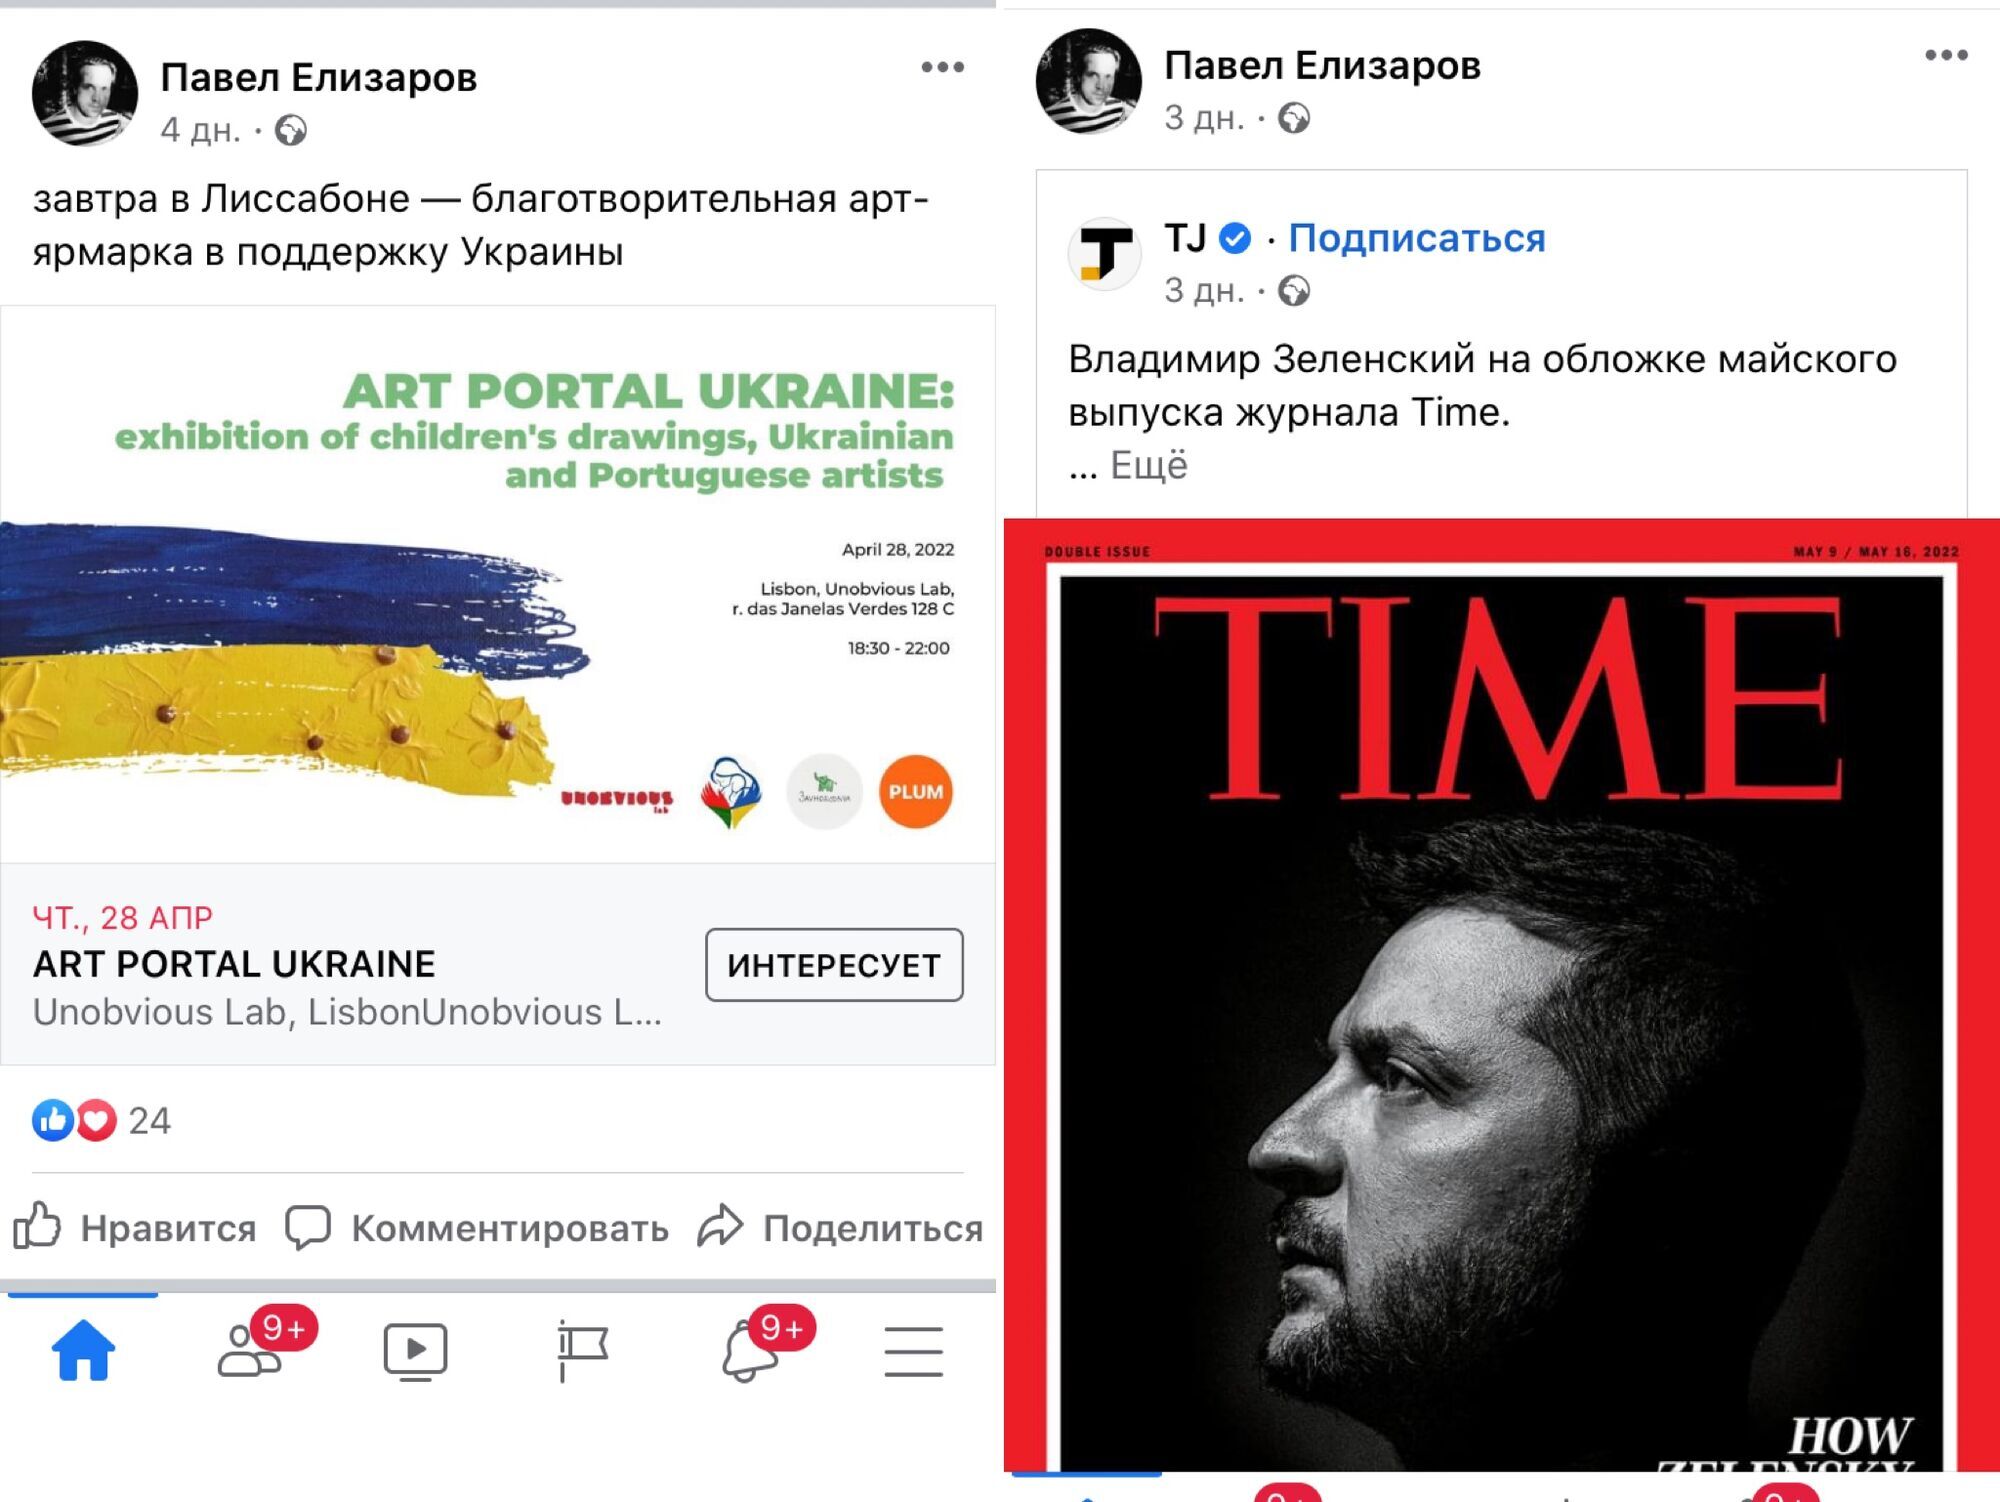 Публикации Павла Елизарова в соцсетях